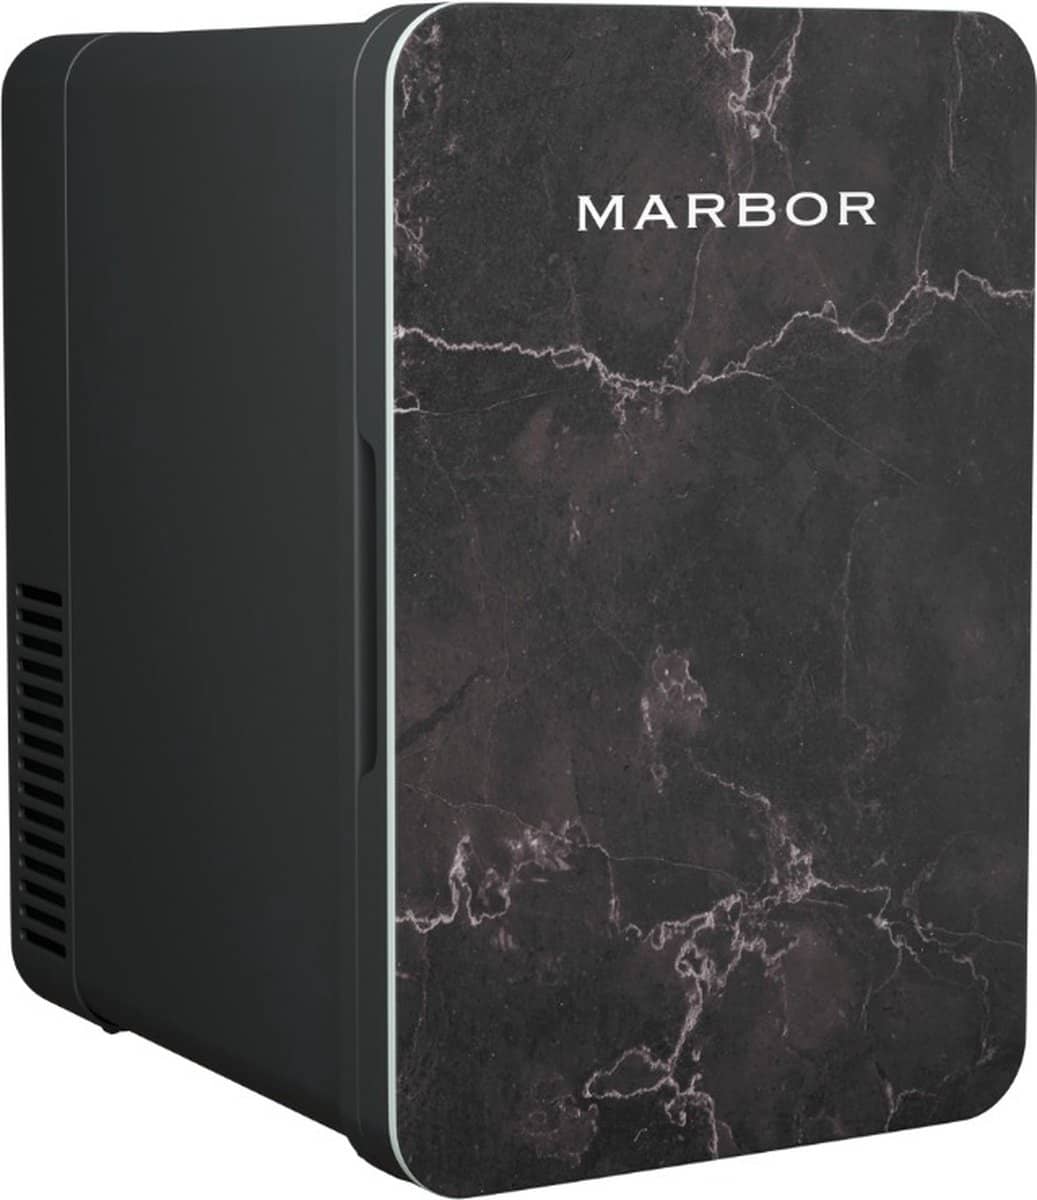 Marbor FW216 Pro Black Edition. Klein maar praktisch